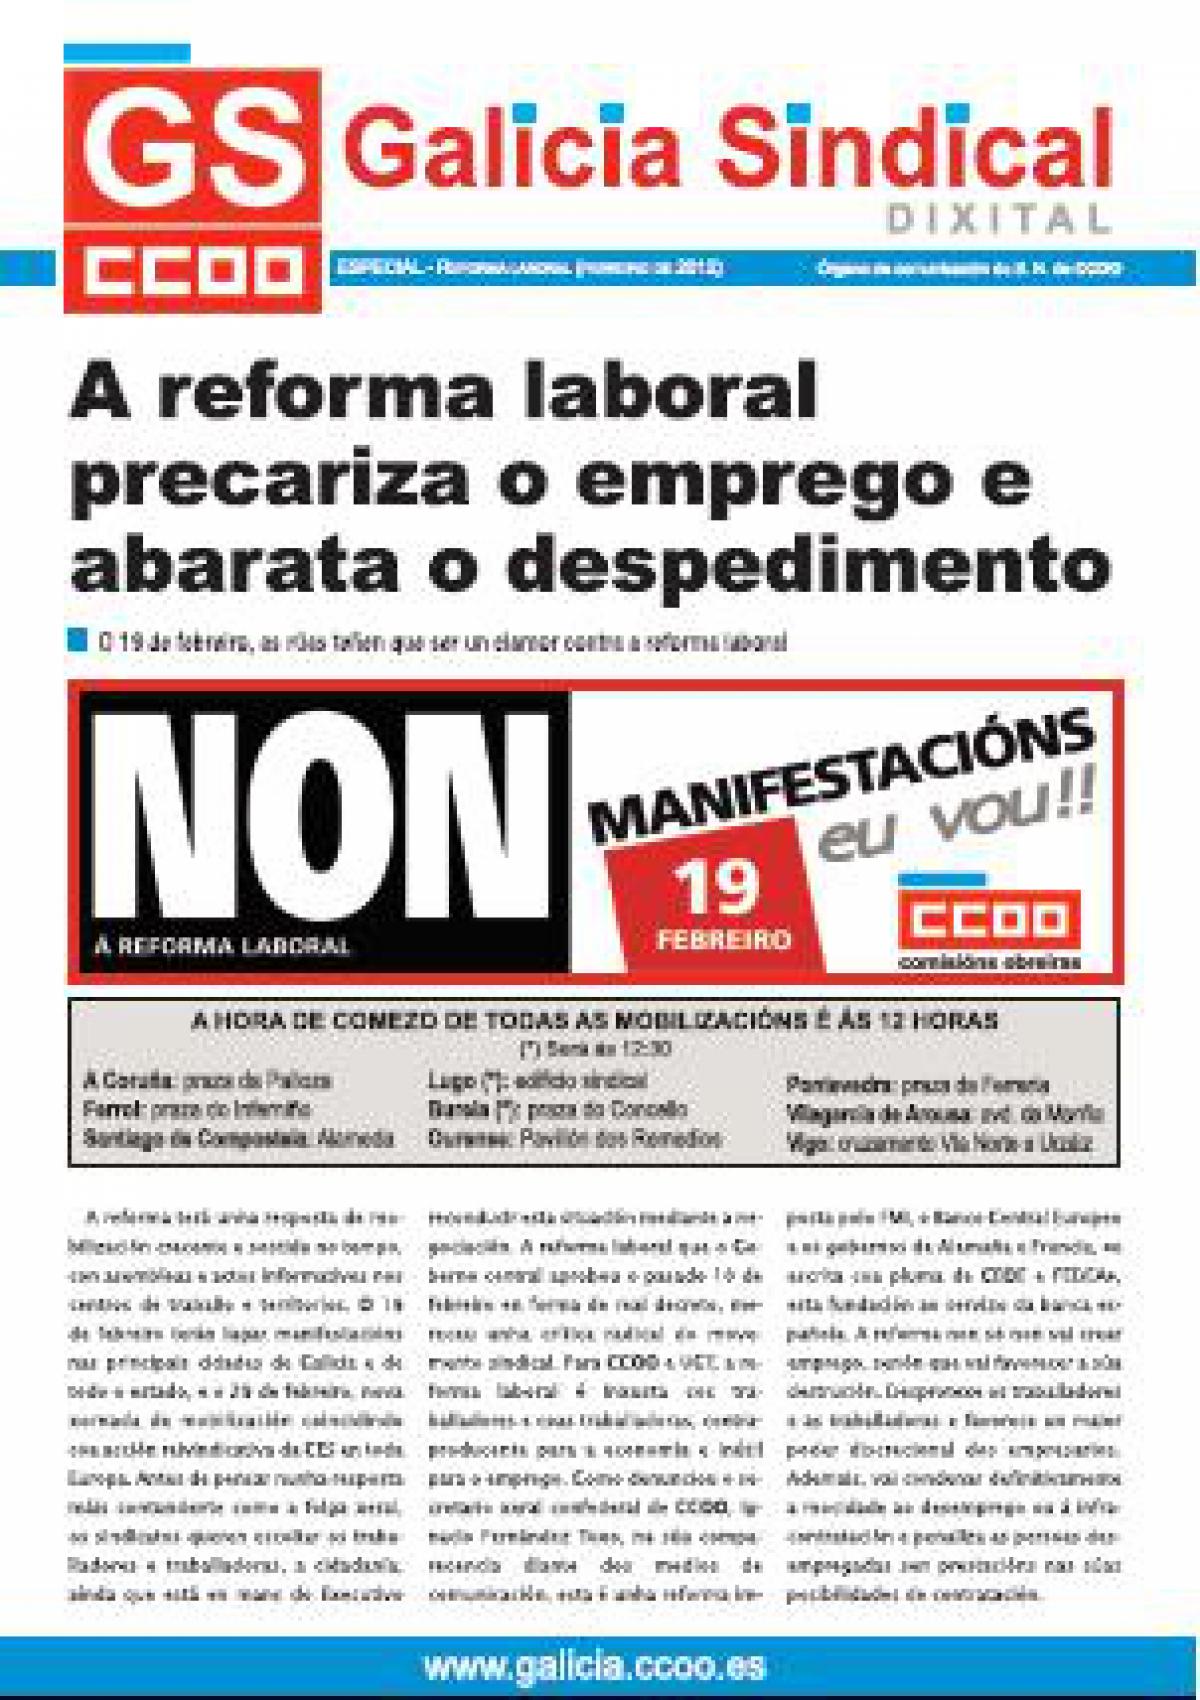 Galicia Sindical especial contra a reforma laboral